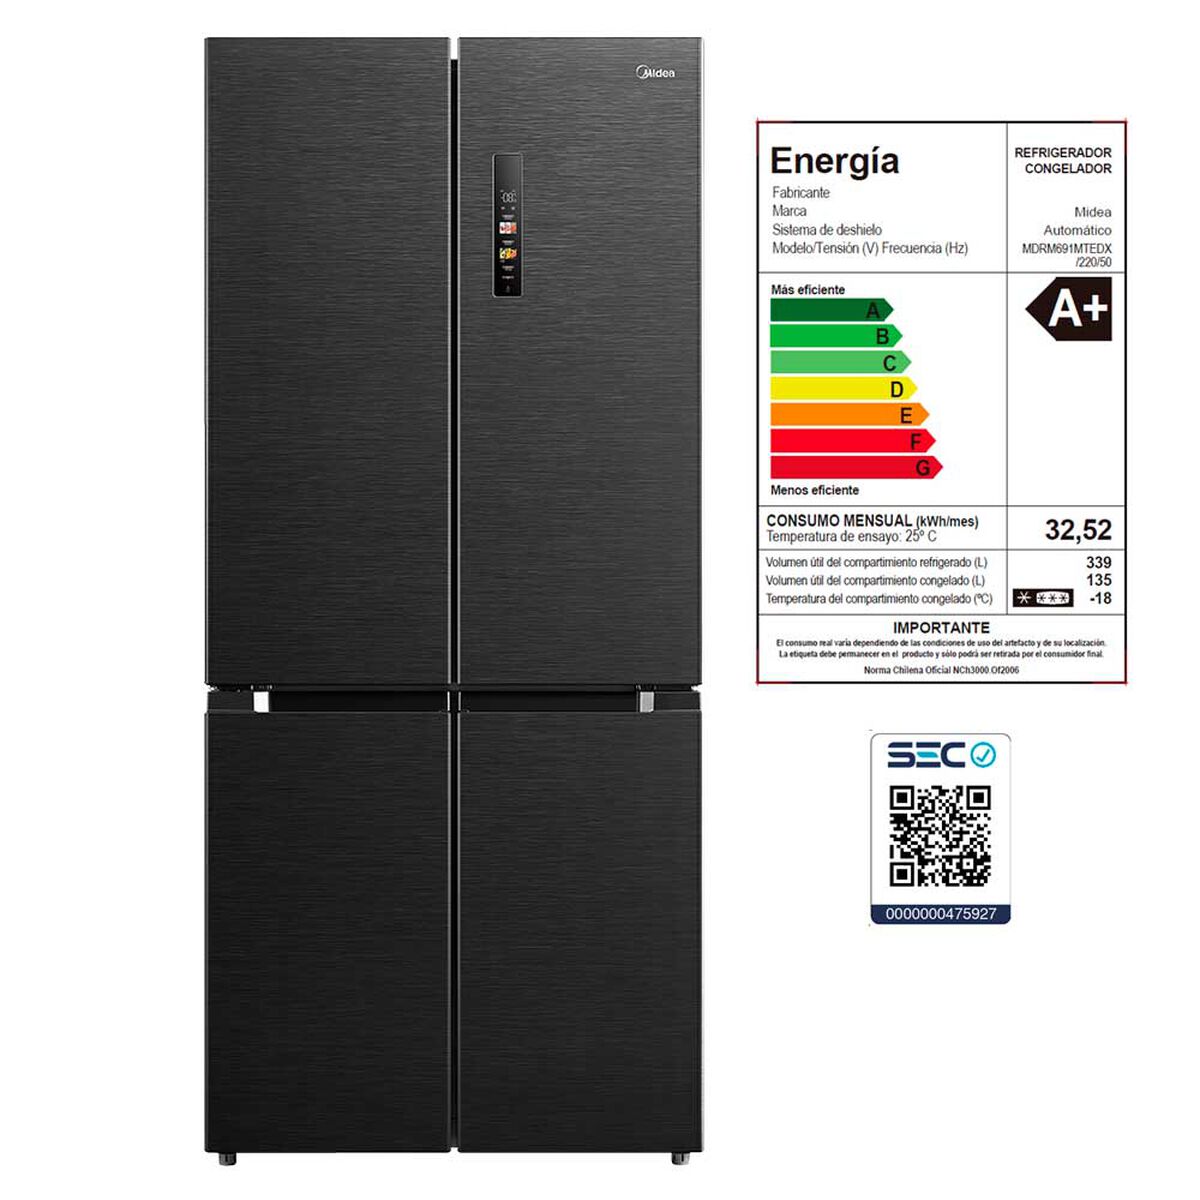 Refrigerador No Frost Midea MDRM691MTEDX 474 lts.